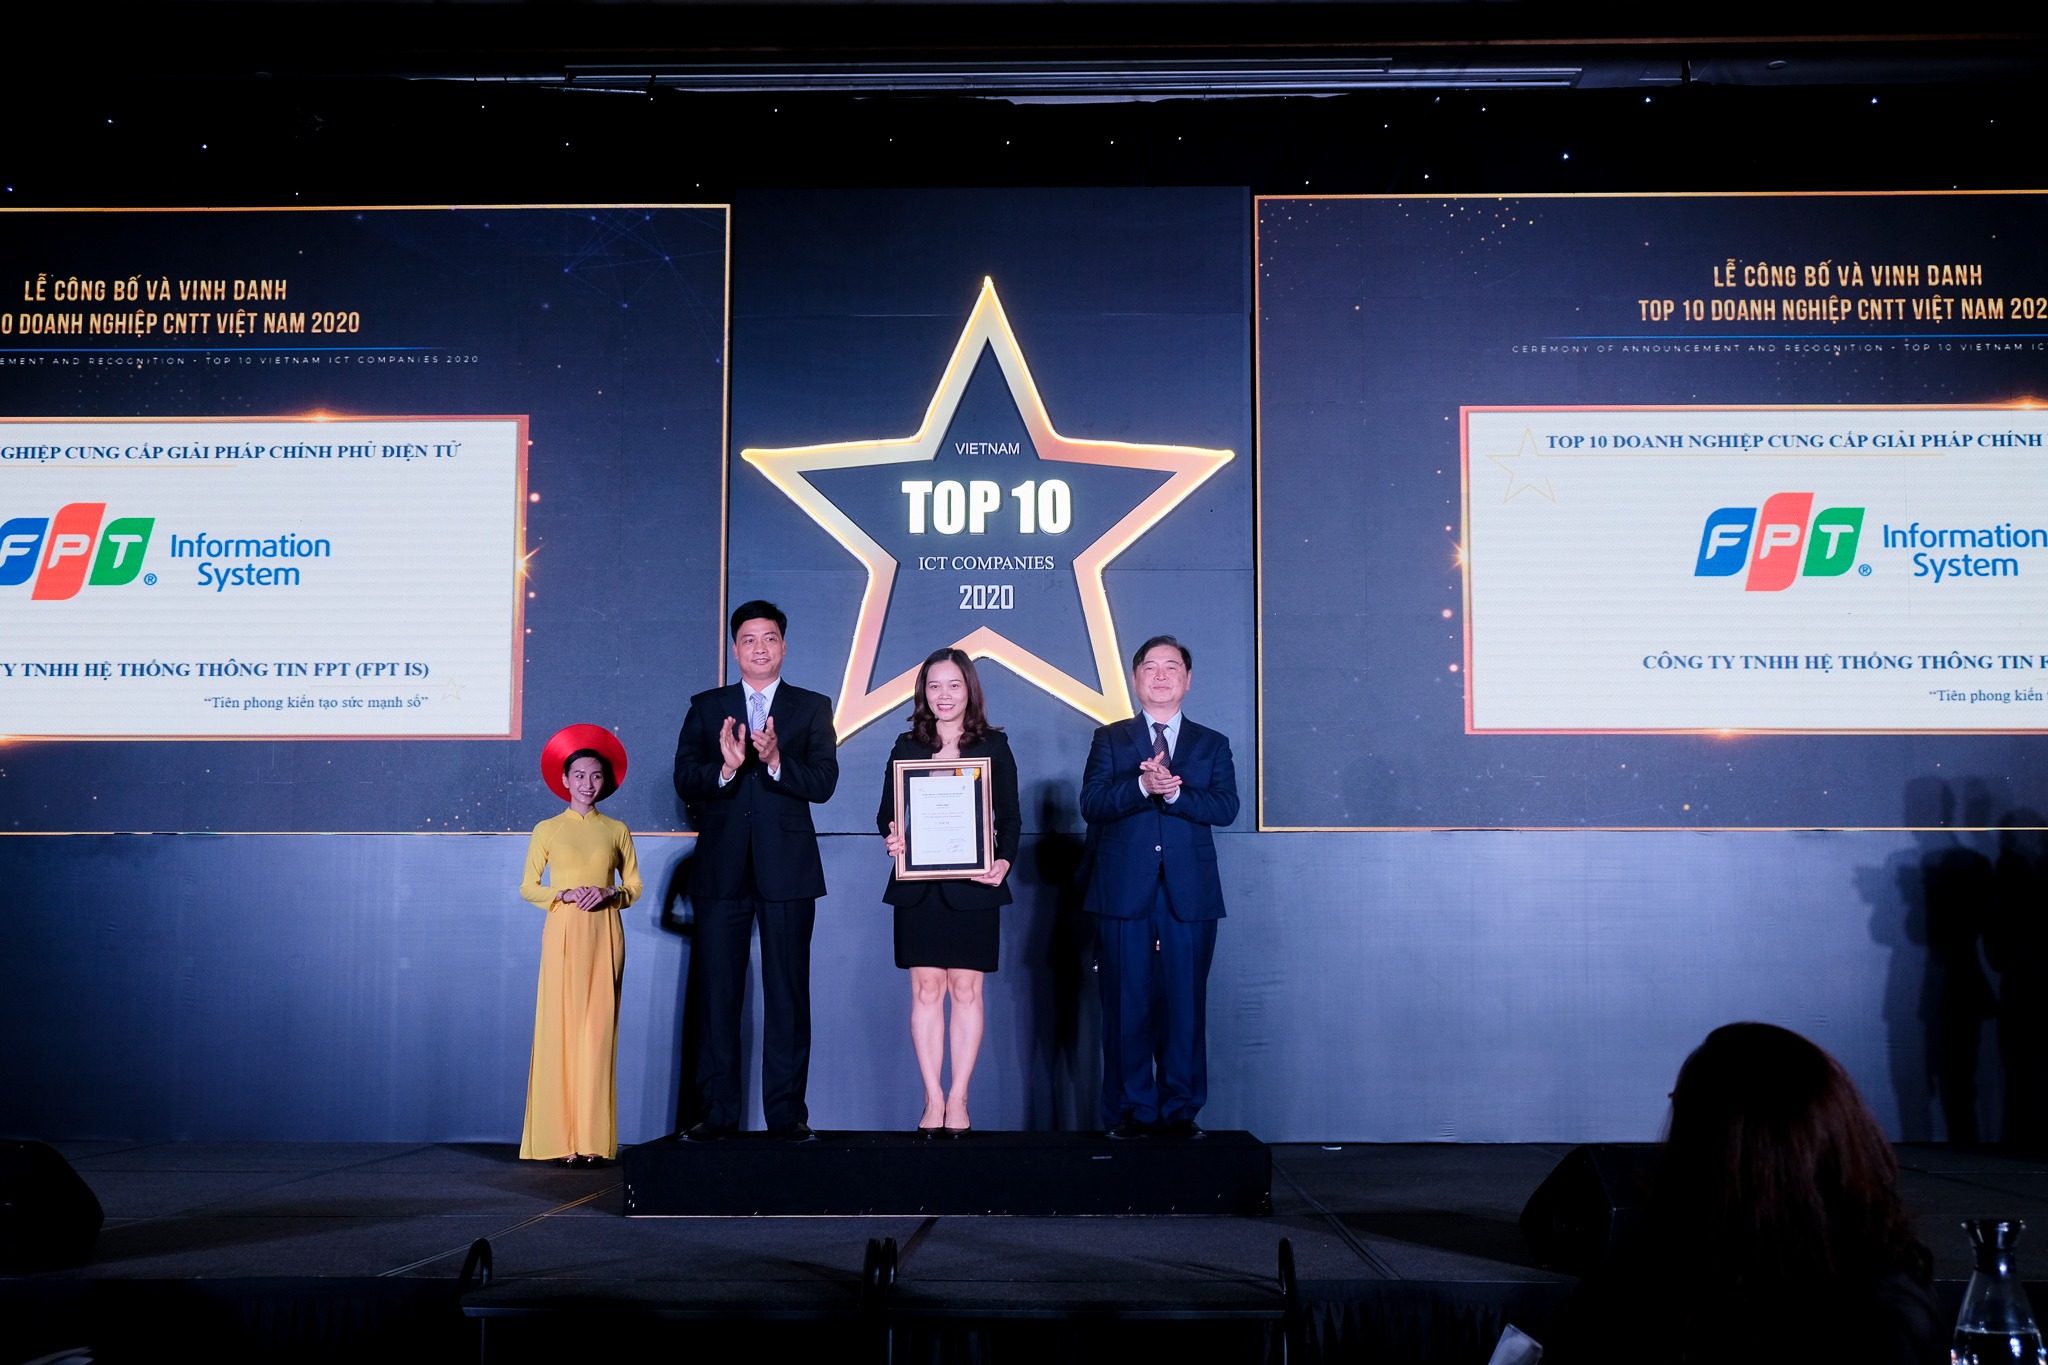 TOP 10 Doanh nghiệp cung cấp giải pháp Chính phủ điện tử Việt Nam 2020